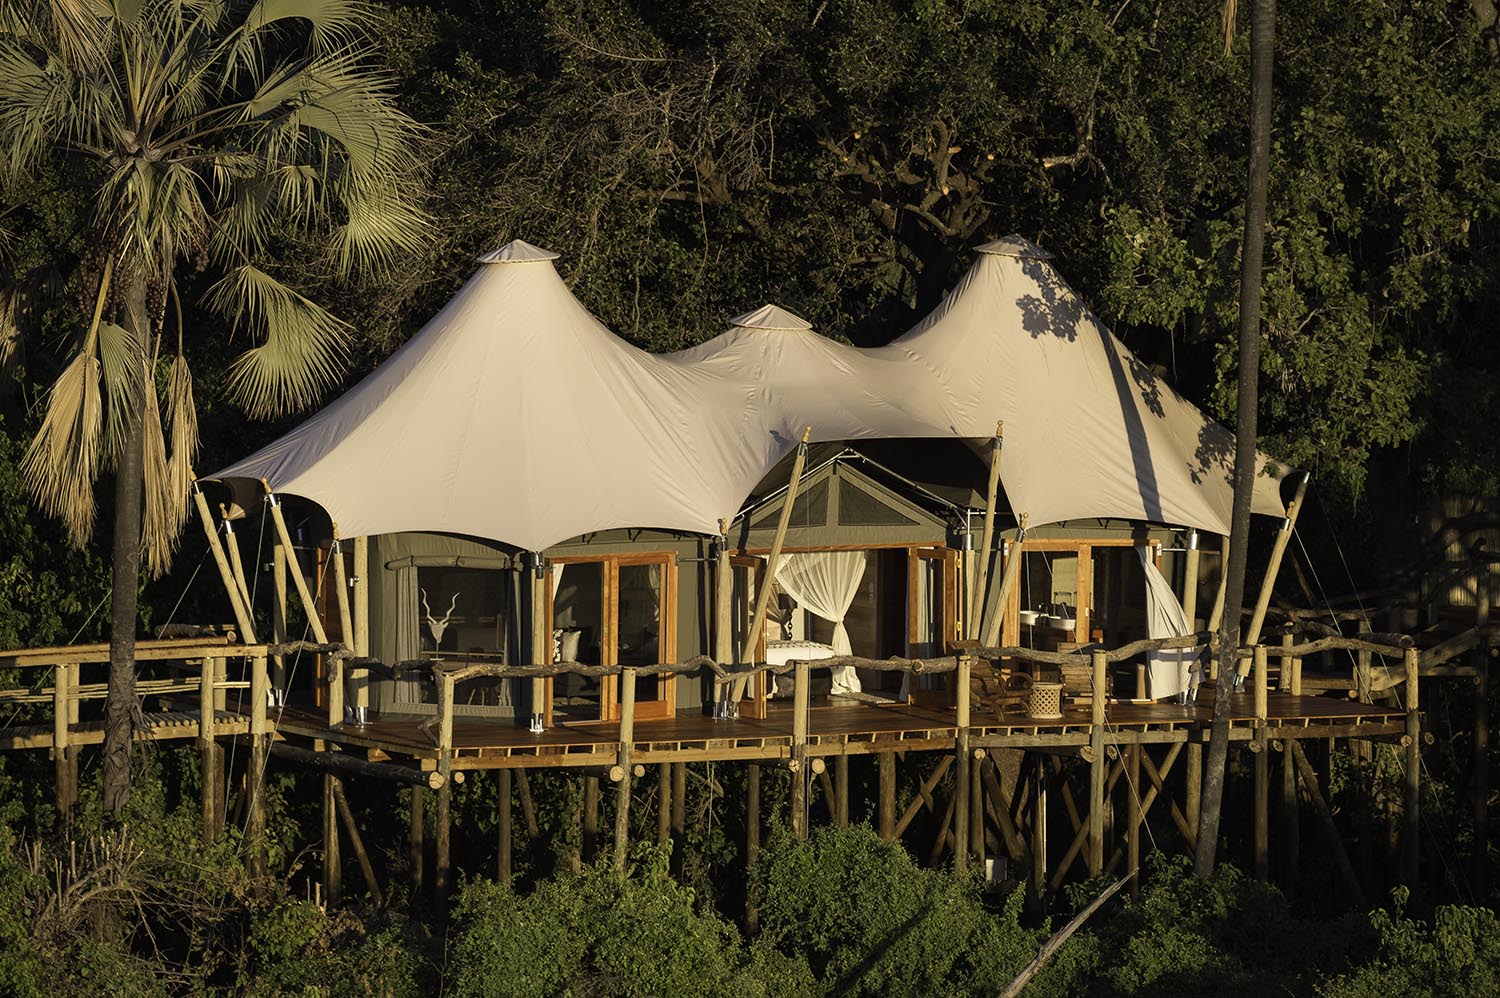 Bushtec Safari: Magnifi-Tent Manufacturers of Glamping and Luxury Safari Tents